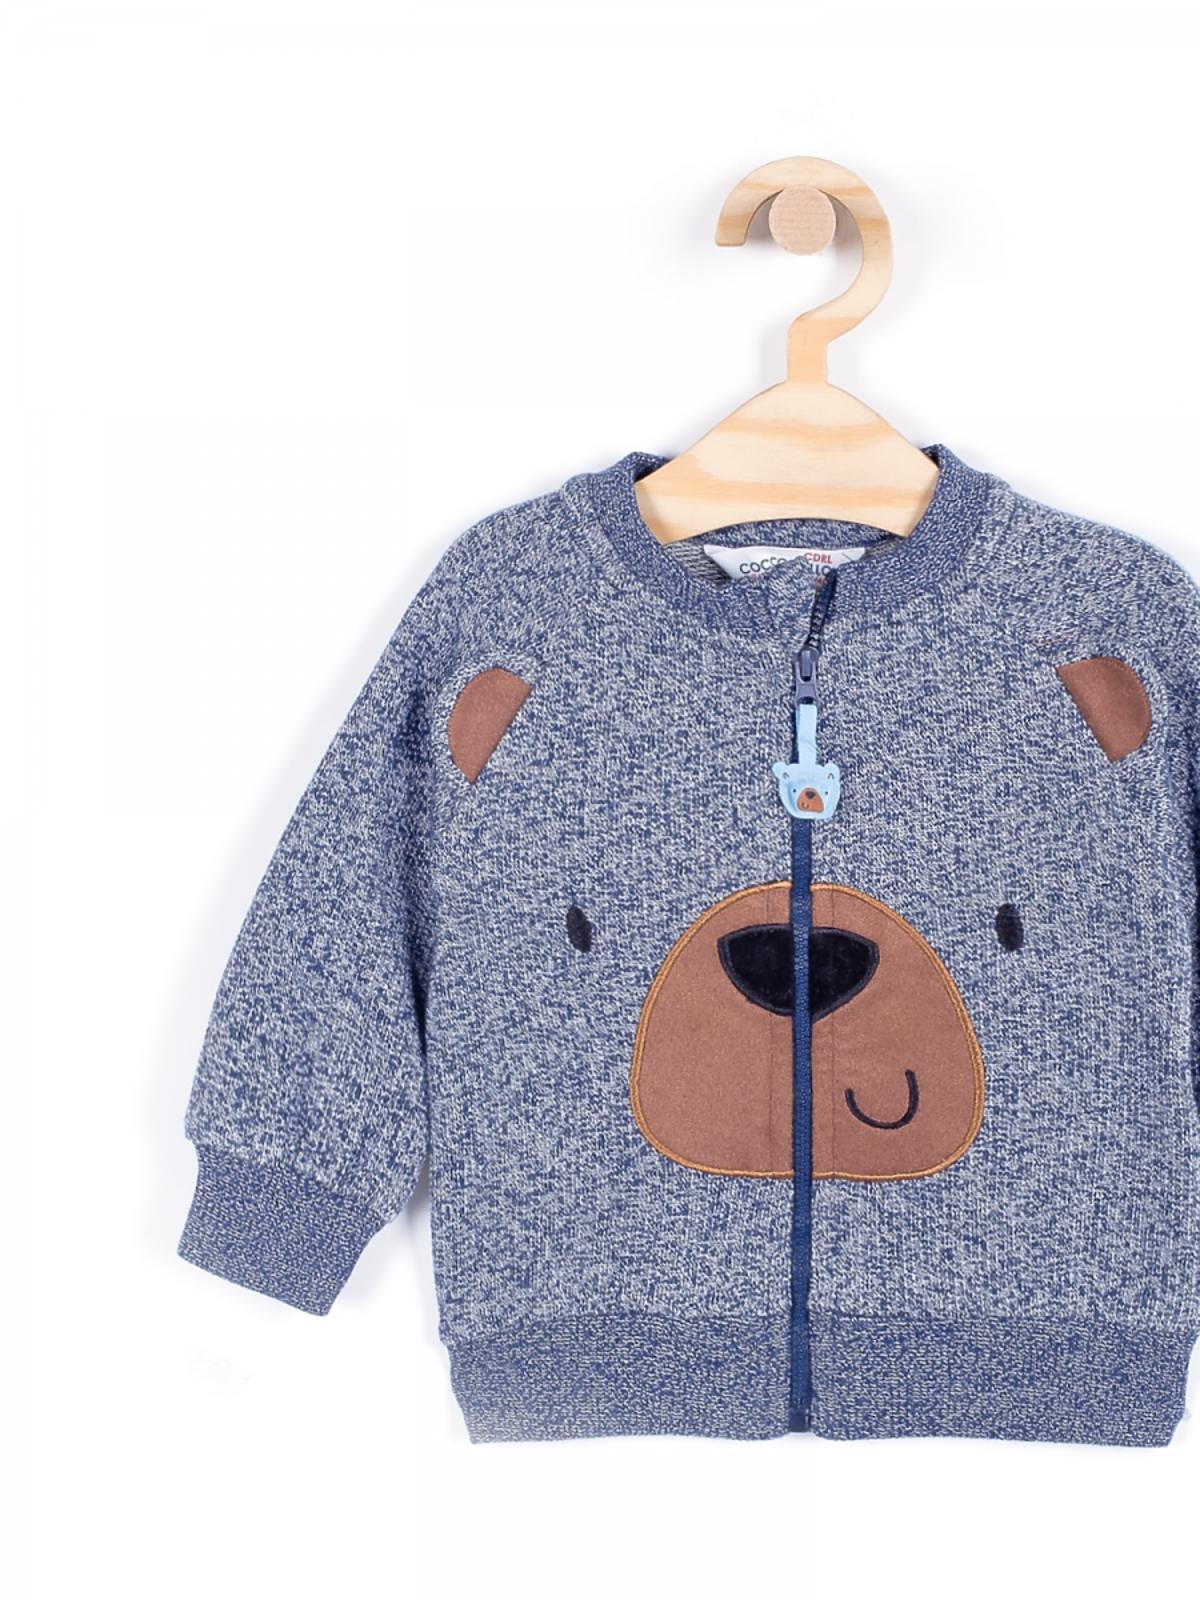 sweterek dla chłopca Coccodrilo, ubranka dla chłopca, ubranka dla dzieci na jesień 